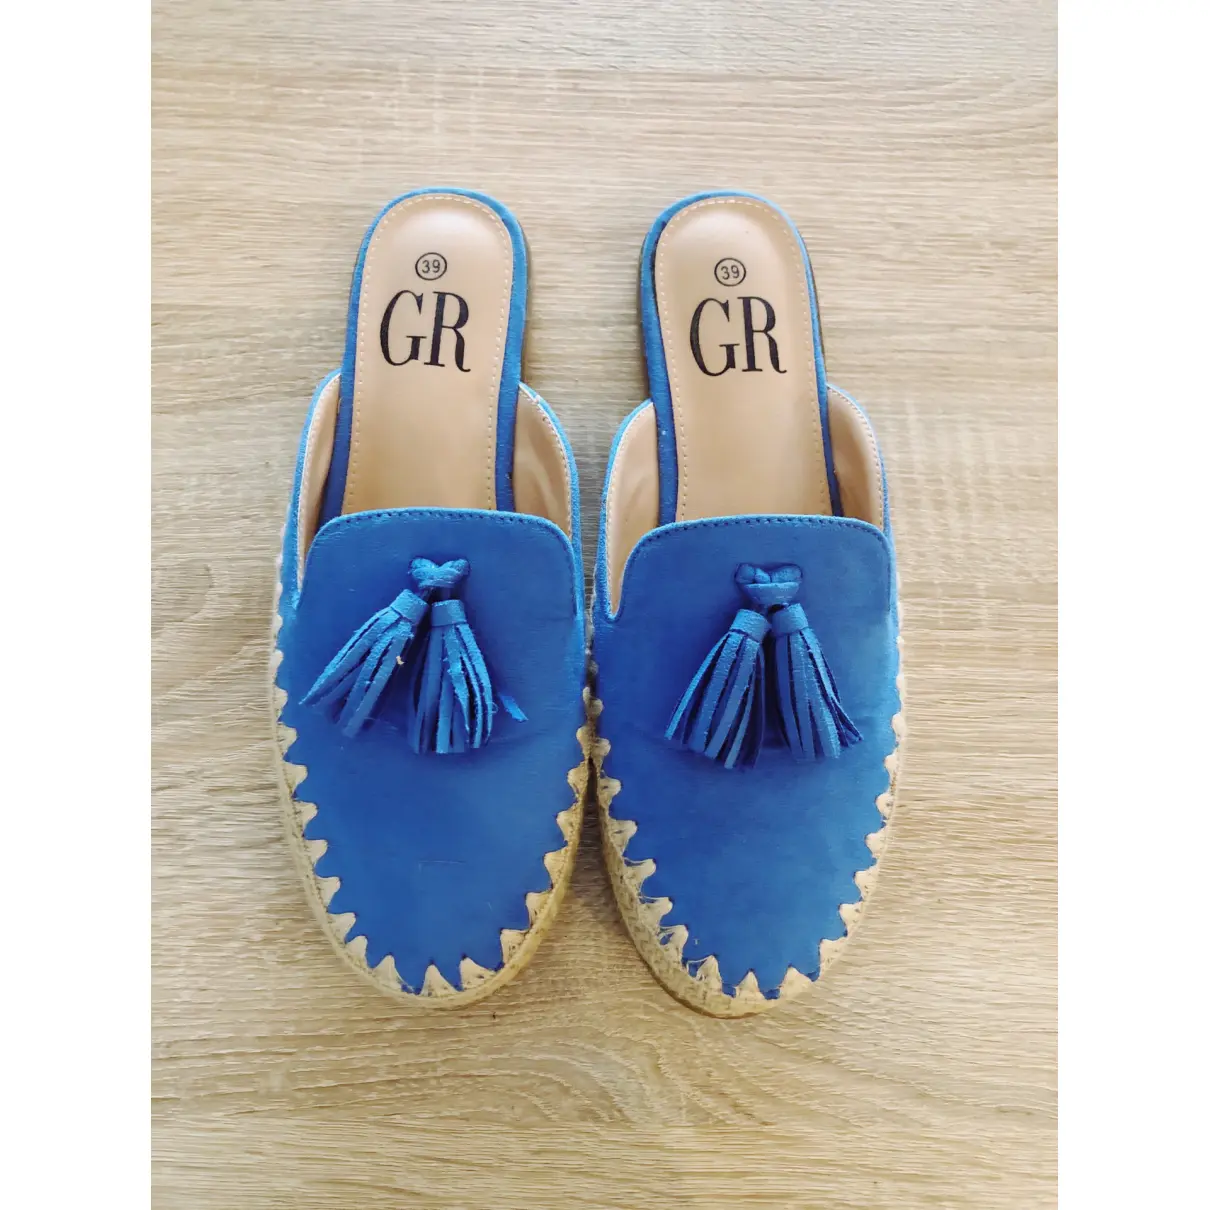 Buy Georges Rech Velvet sandals online